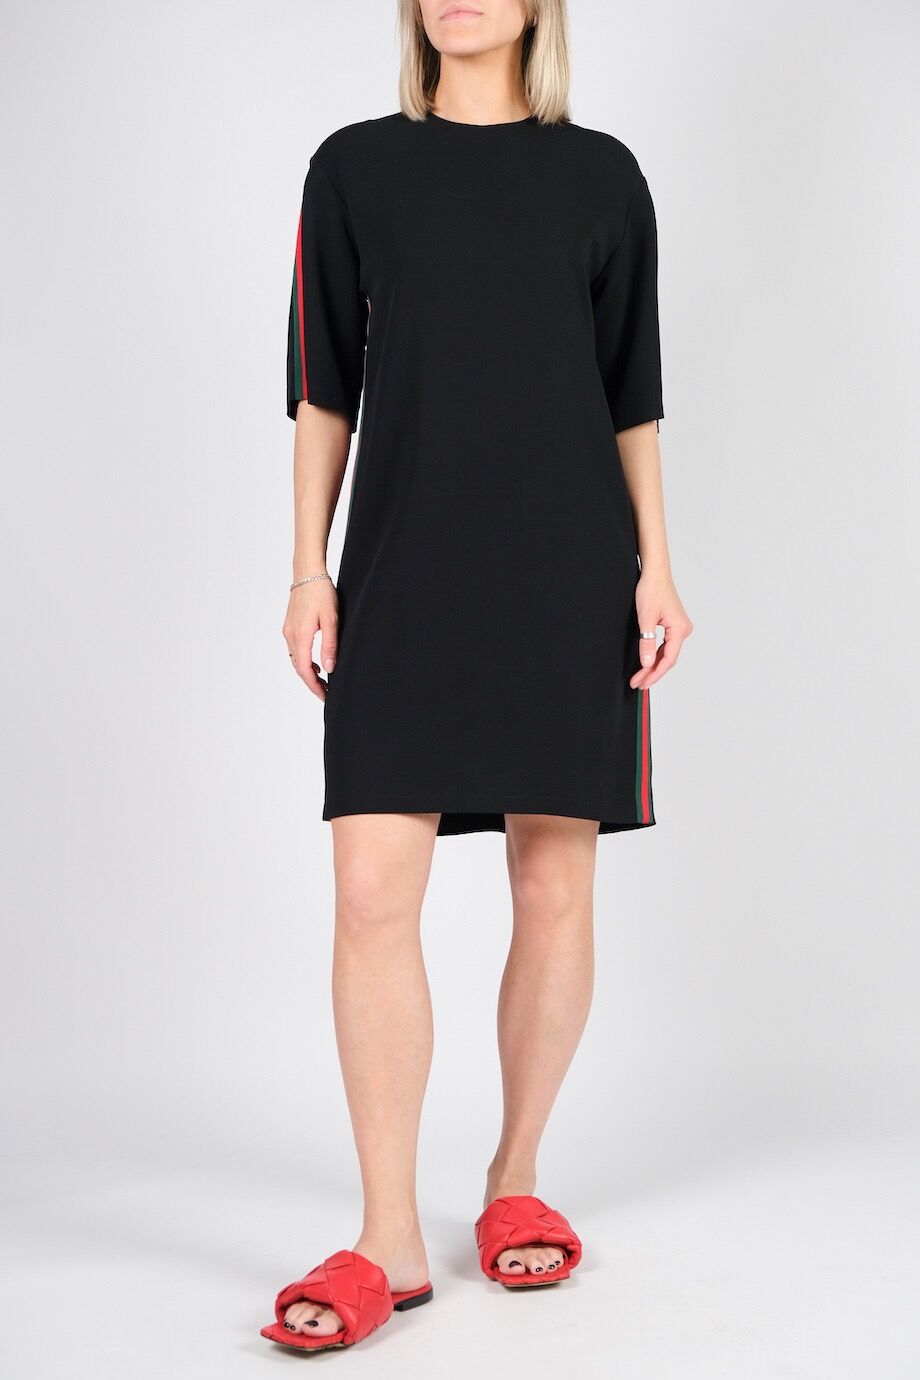 image 1 Платье чёрного цвета с репсовой цветной лентой